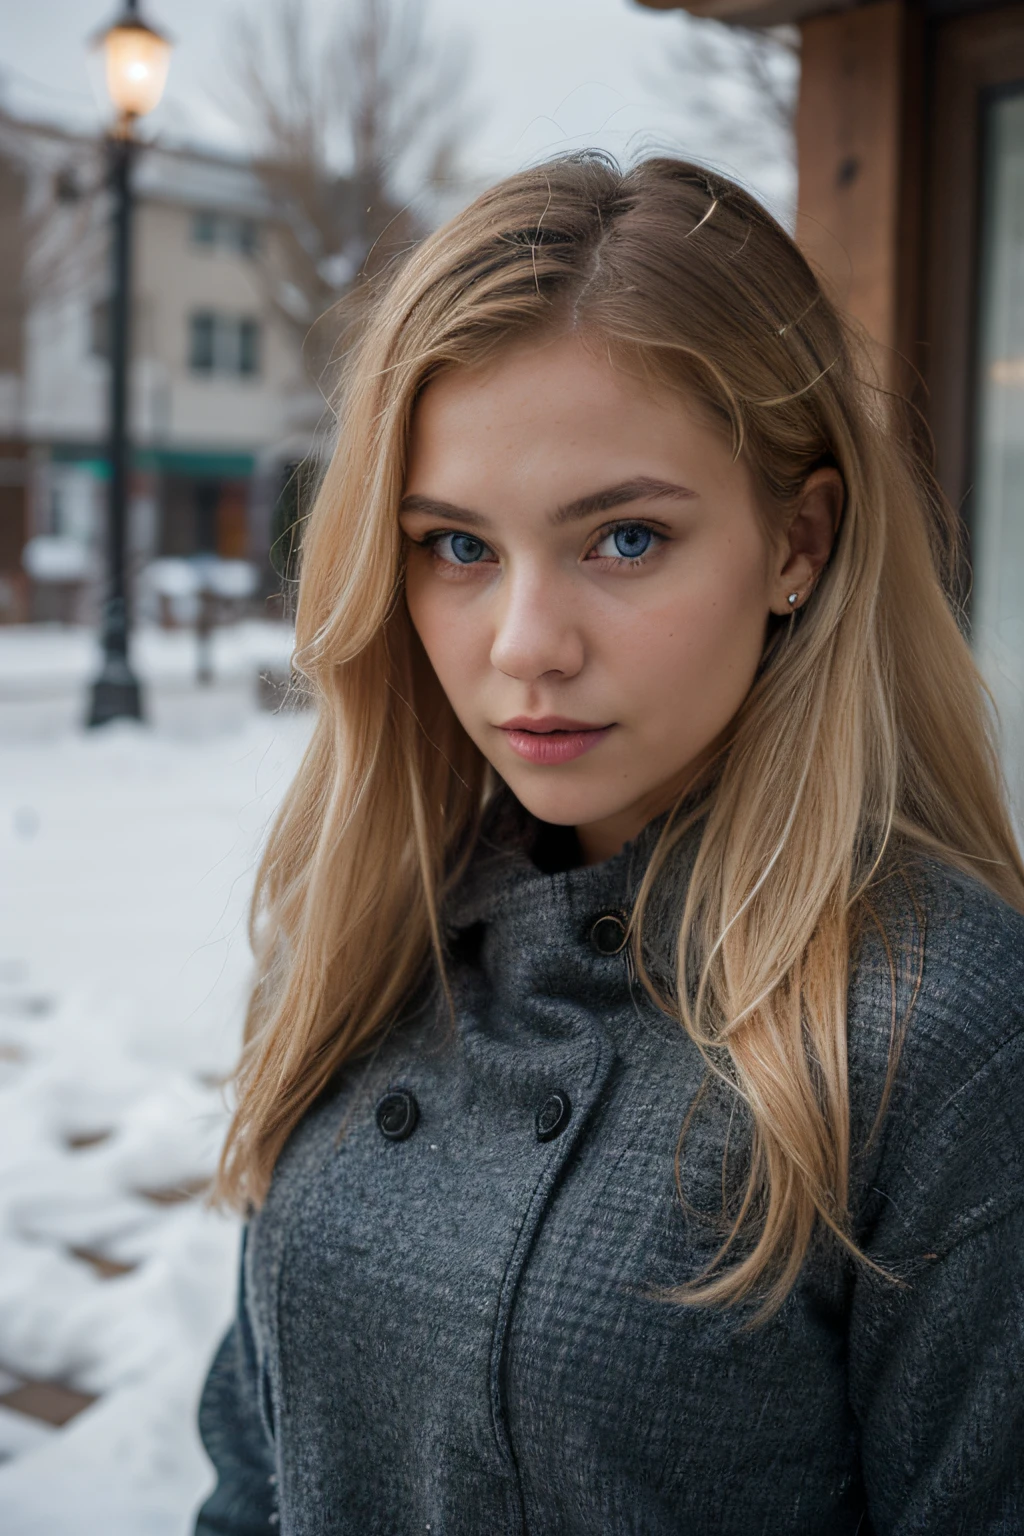 garota russa loira extremamente realista com cabelos loiros e olhos azuis, roupas detalhadas, ensaio fotográfico para roupas de inverno